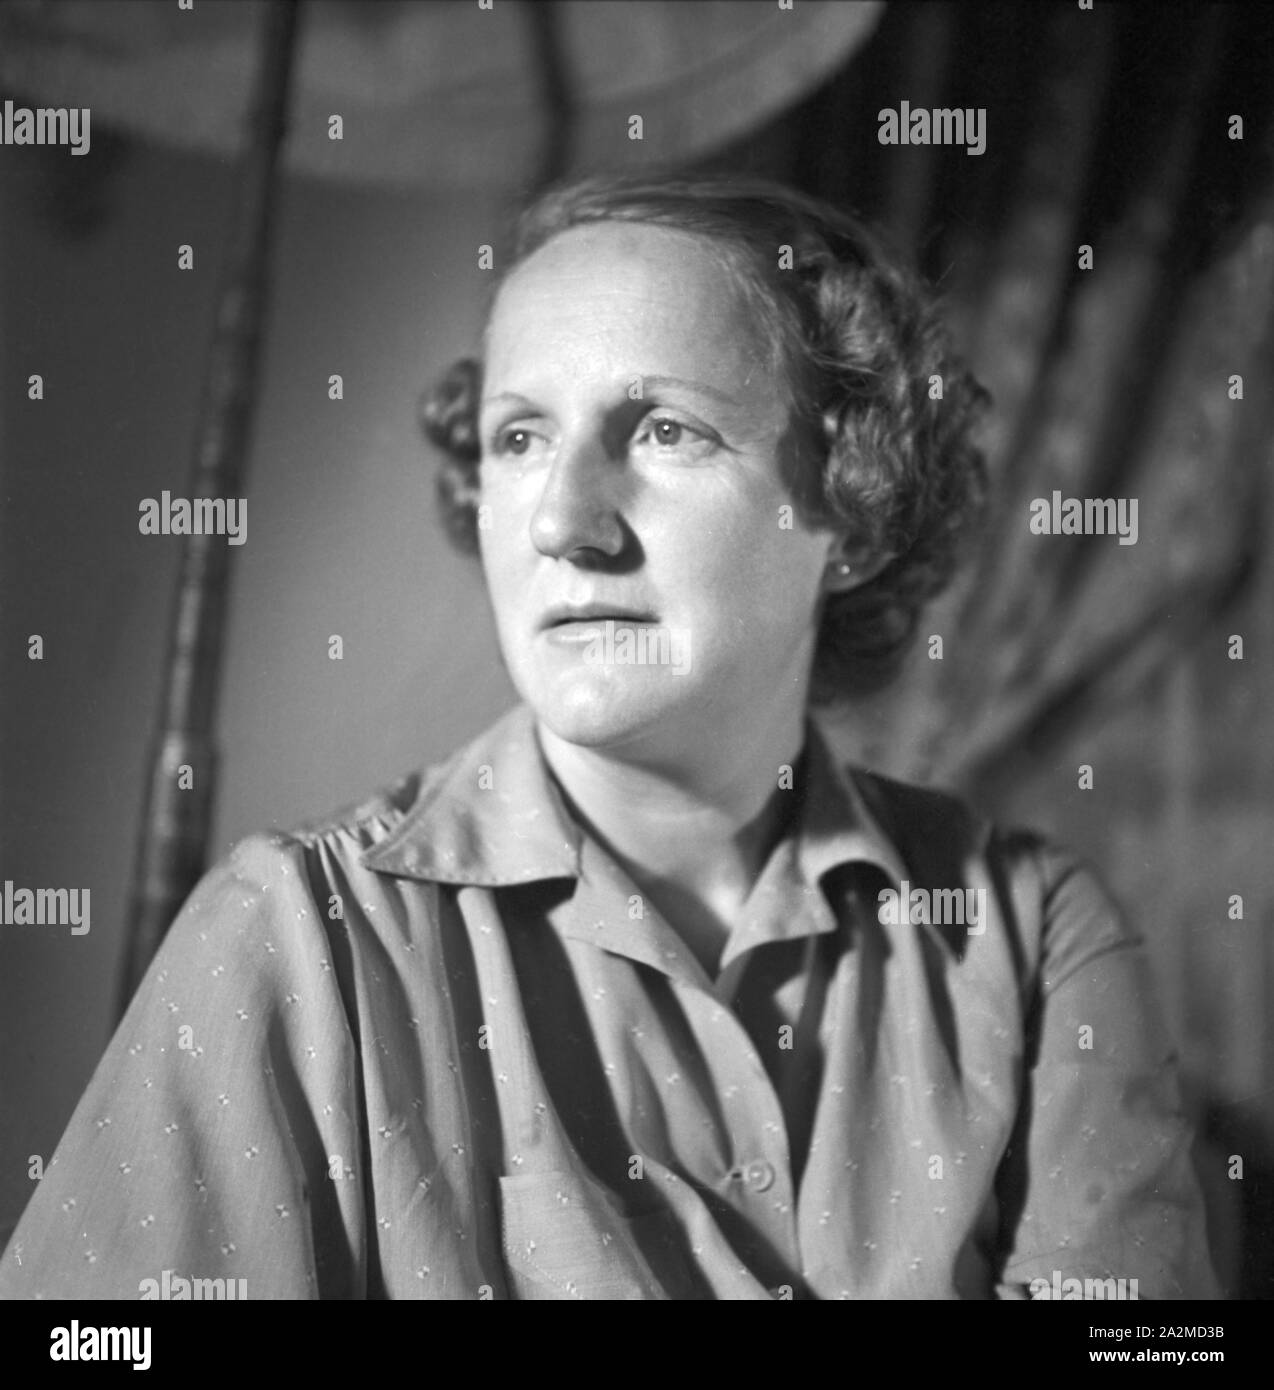 Porträt einer jungen Frau, Deutschland, 1940er Jahre. Portait of a young woman, Germany 1940s. Stock Photo